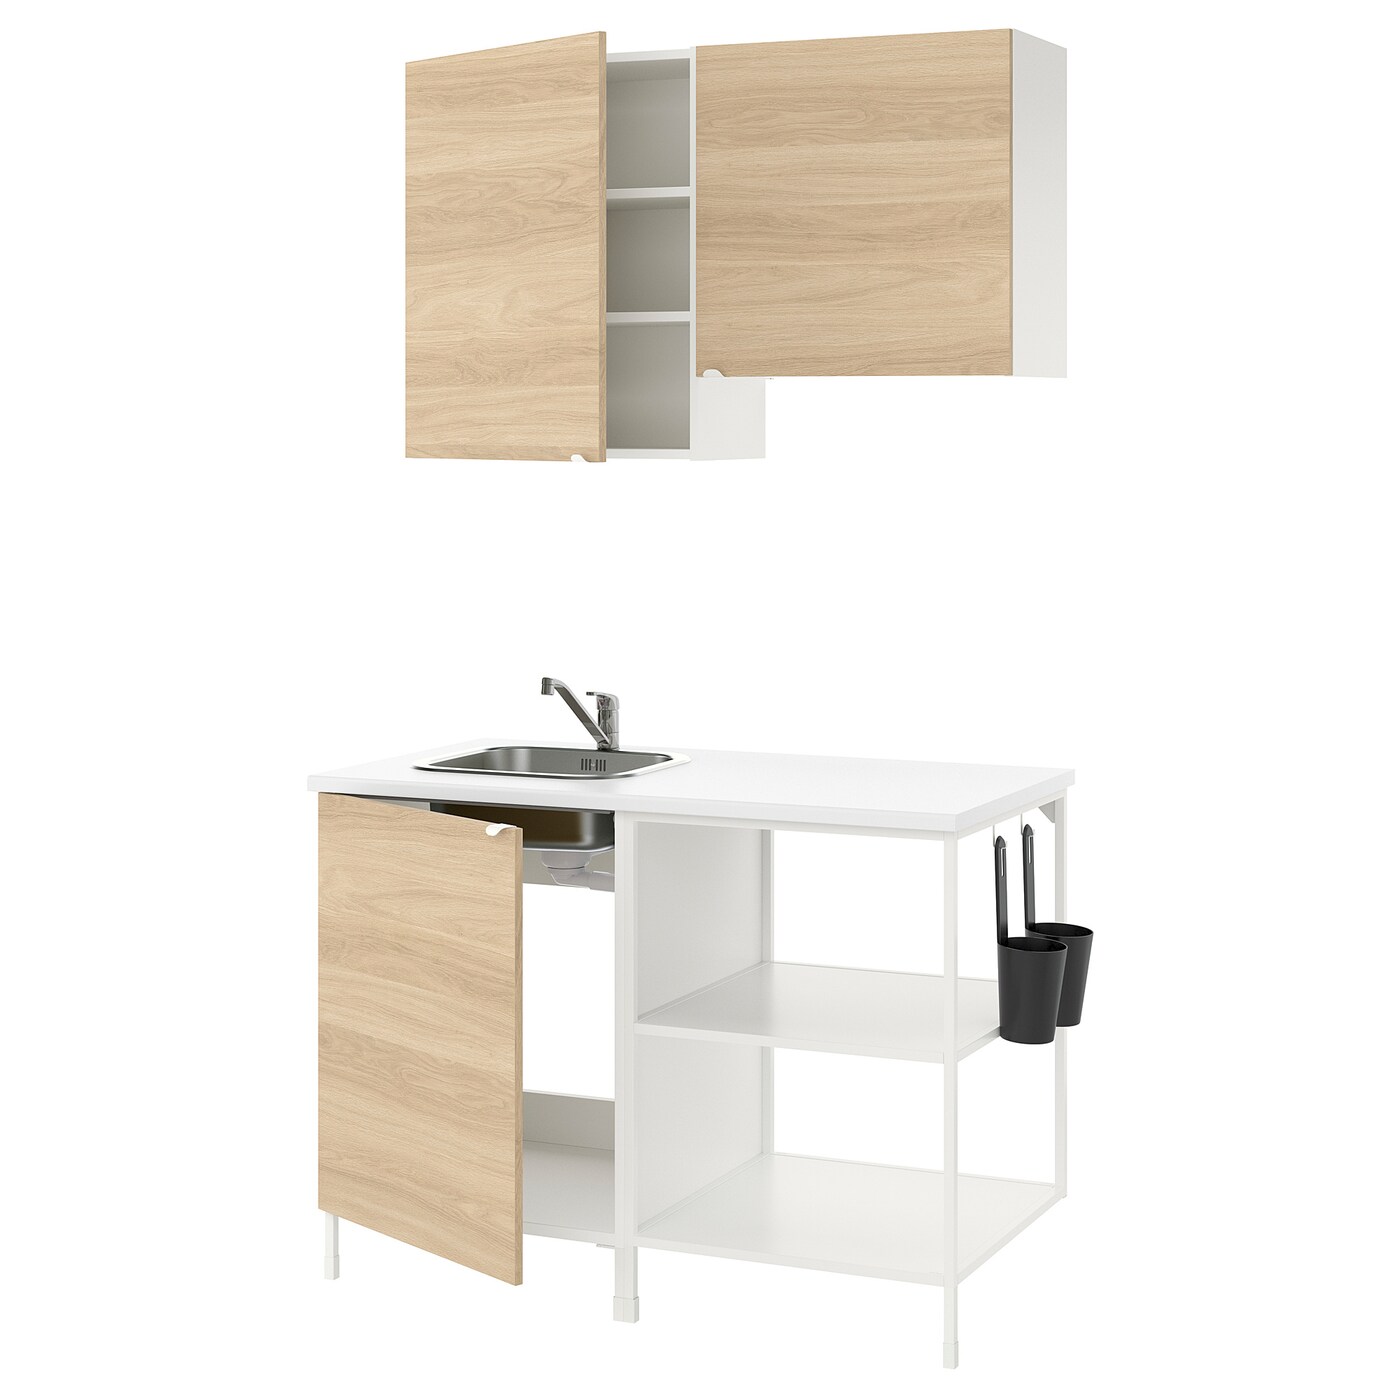 Кухонная комбинация для хранения вещей - ENHET  IKEA/ ЭНХЕТ ИКЕА, 123х63,5х222 см, белый/бежевый